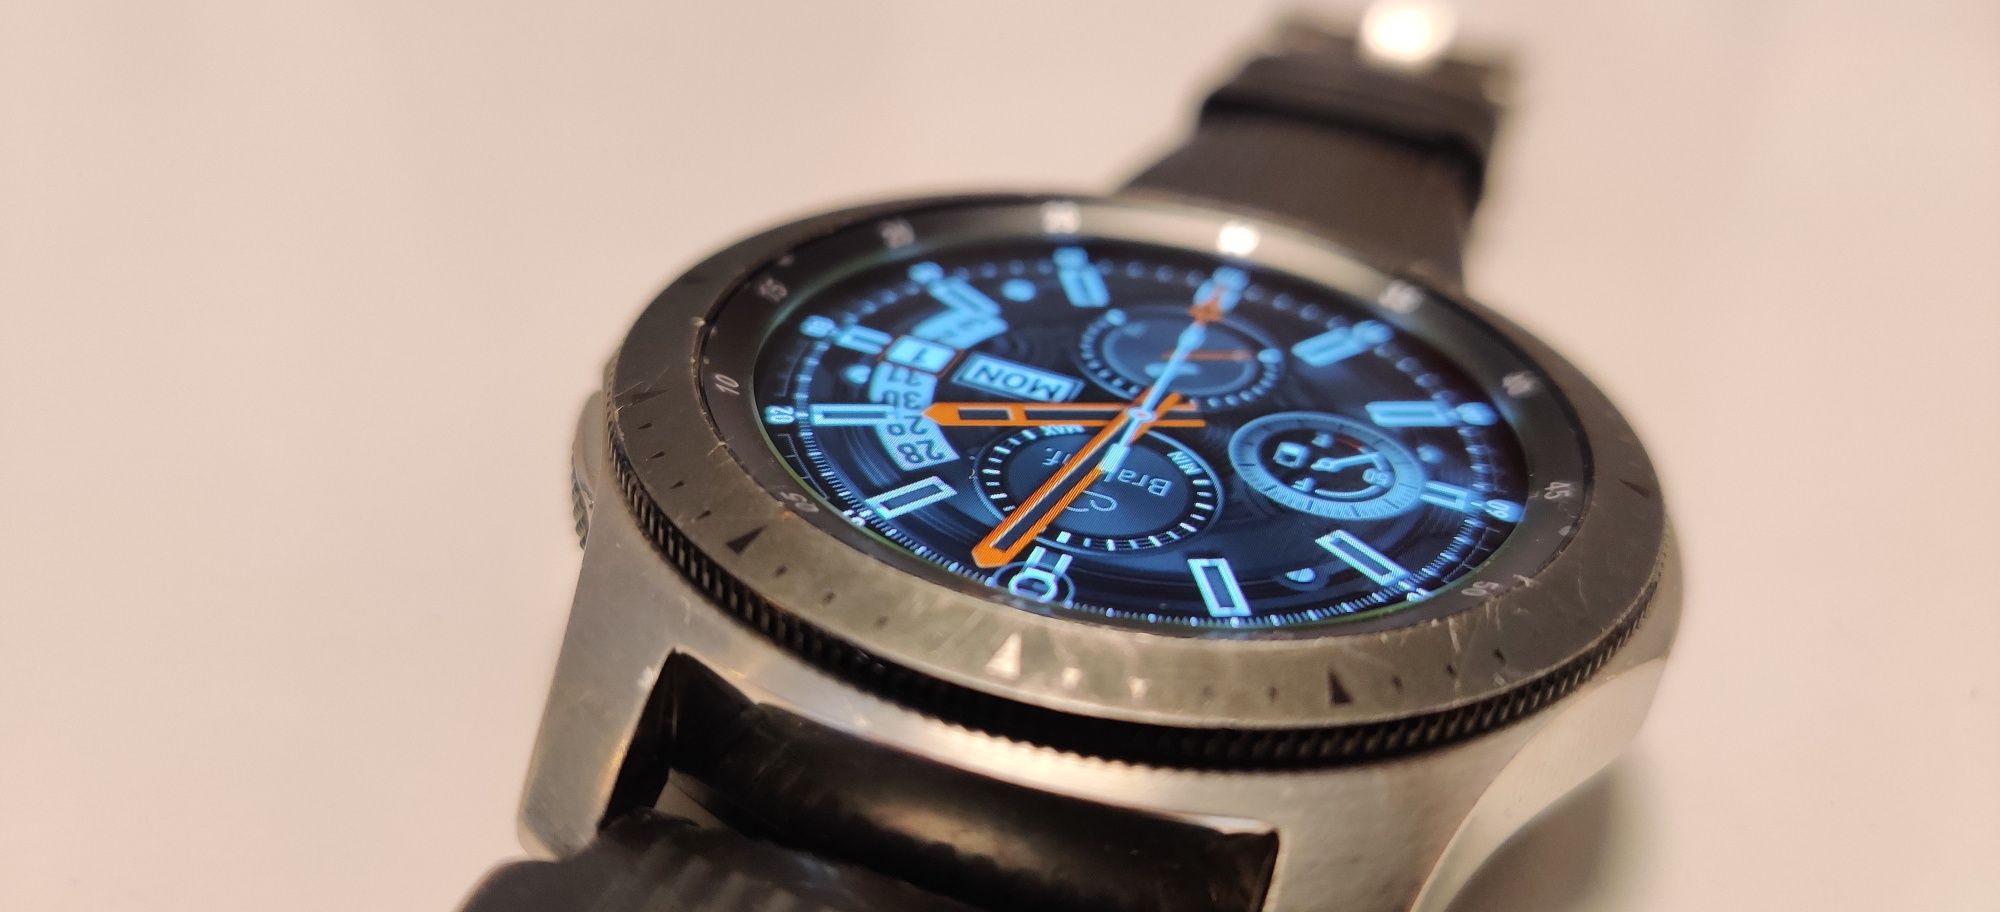 Samsung Galaxy Watch sm-R800